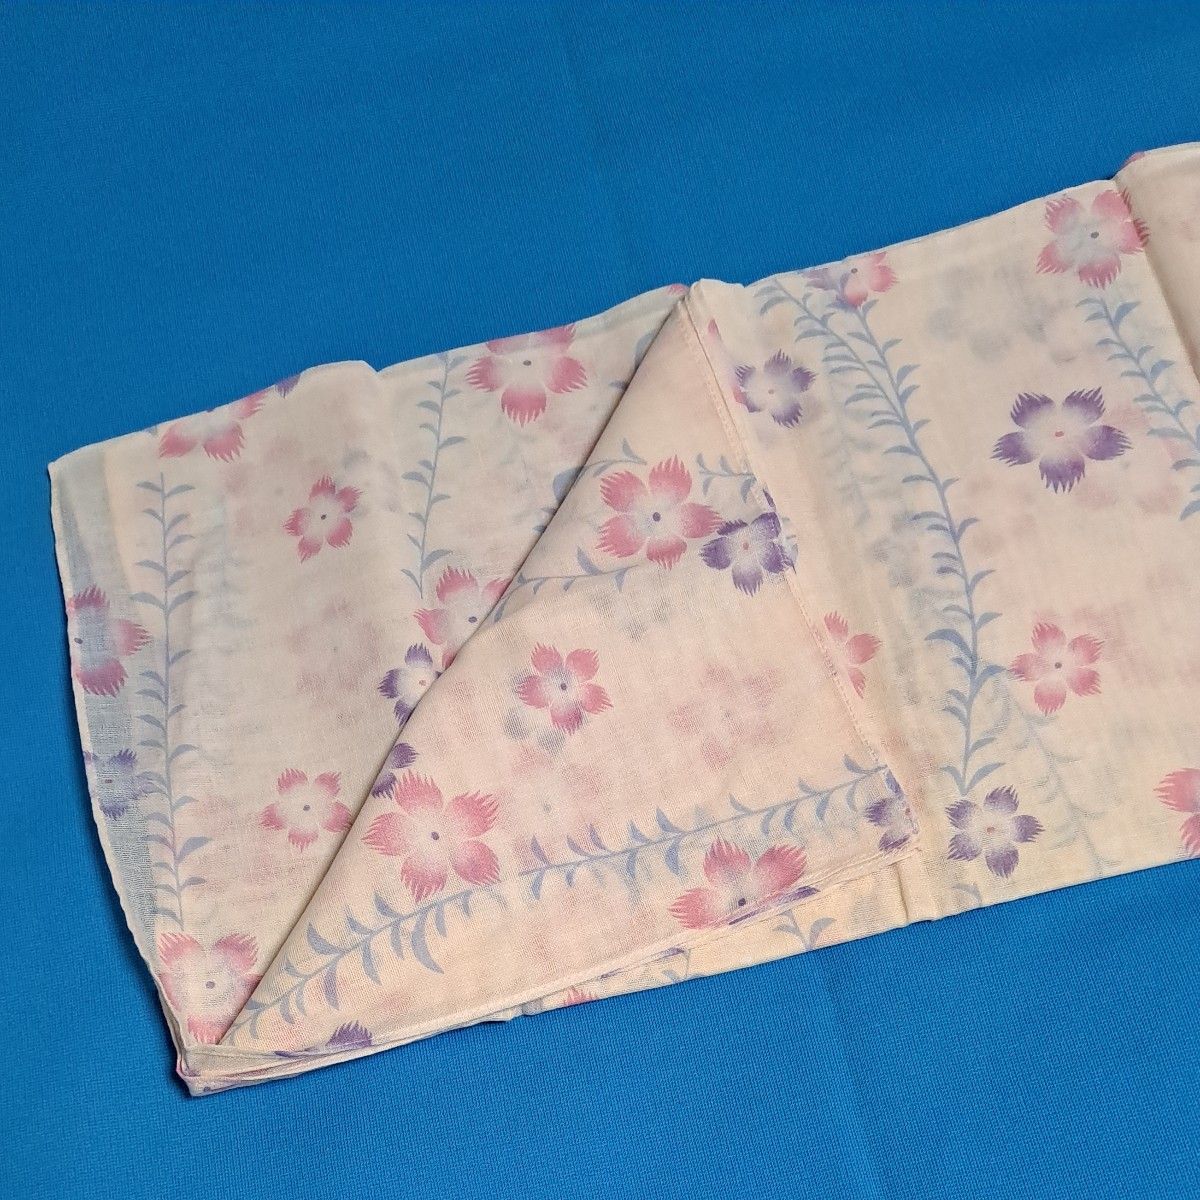 未使用 京都くろちく ストール 撫子 ガーゼ おしゃれストール 170×45 日本製 手ぬぐい スカーフ 綿 くろちく 日本製